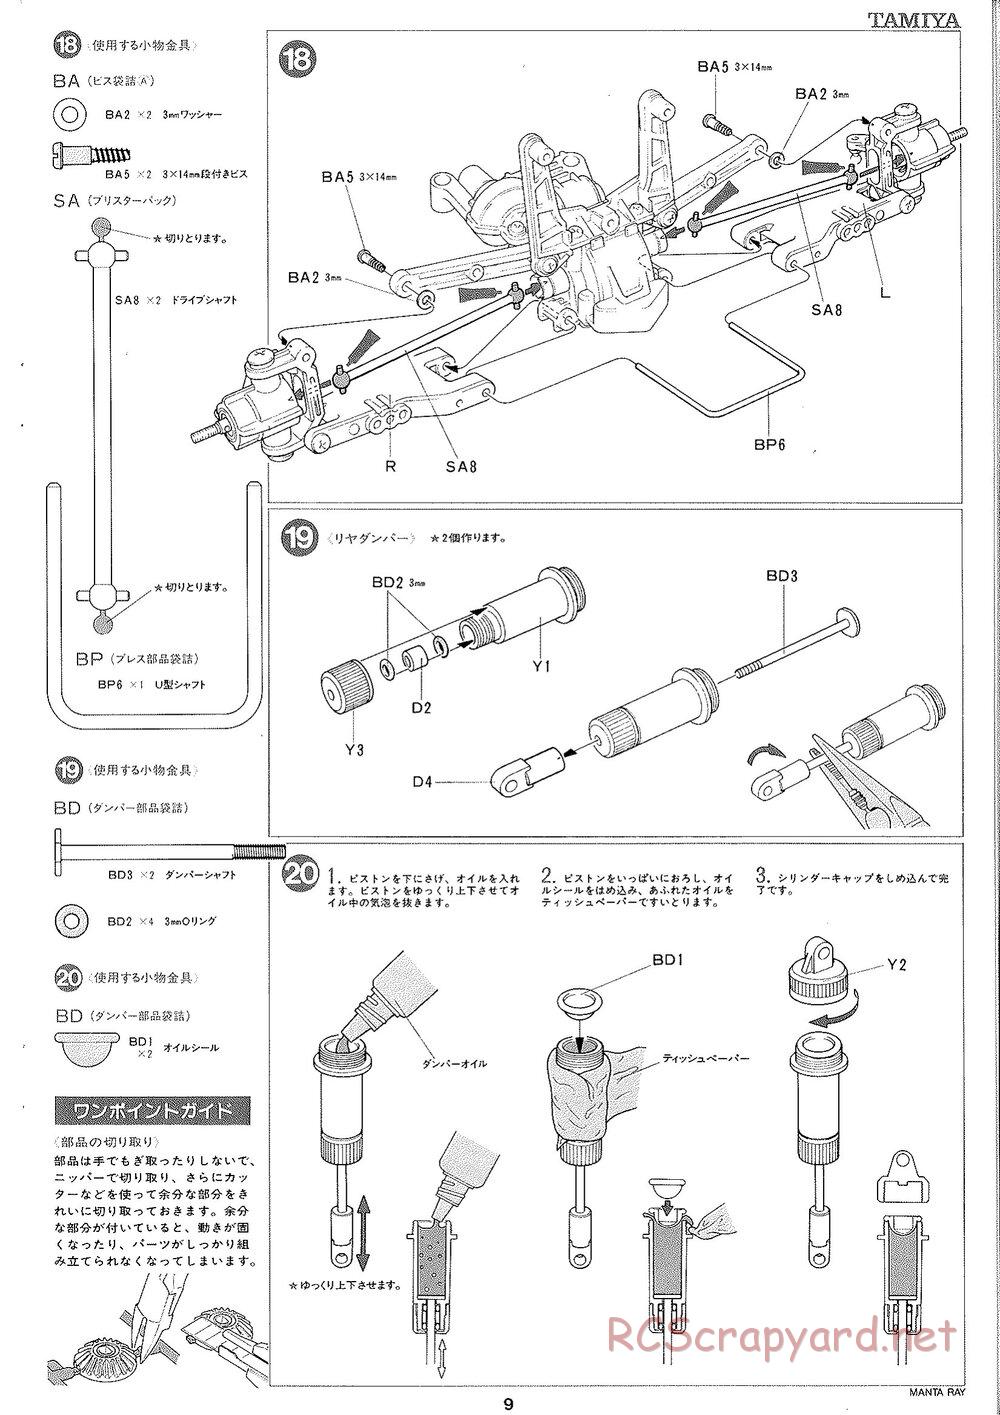 Tamiya - Manta Ray 2005 - DF-01 Chassis - Manual - Page 10